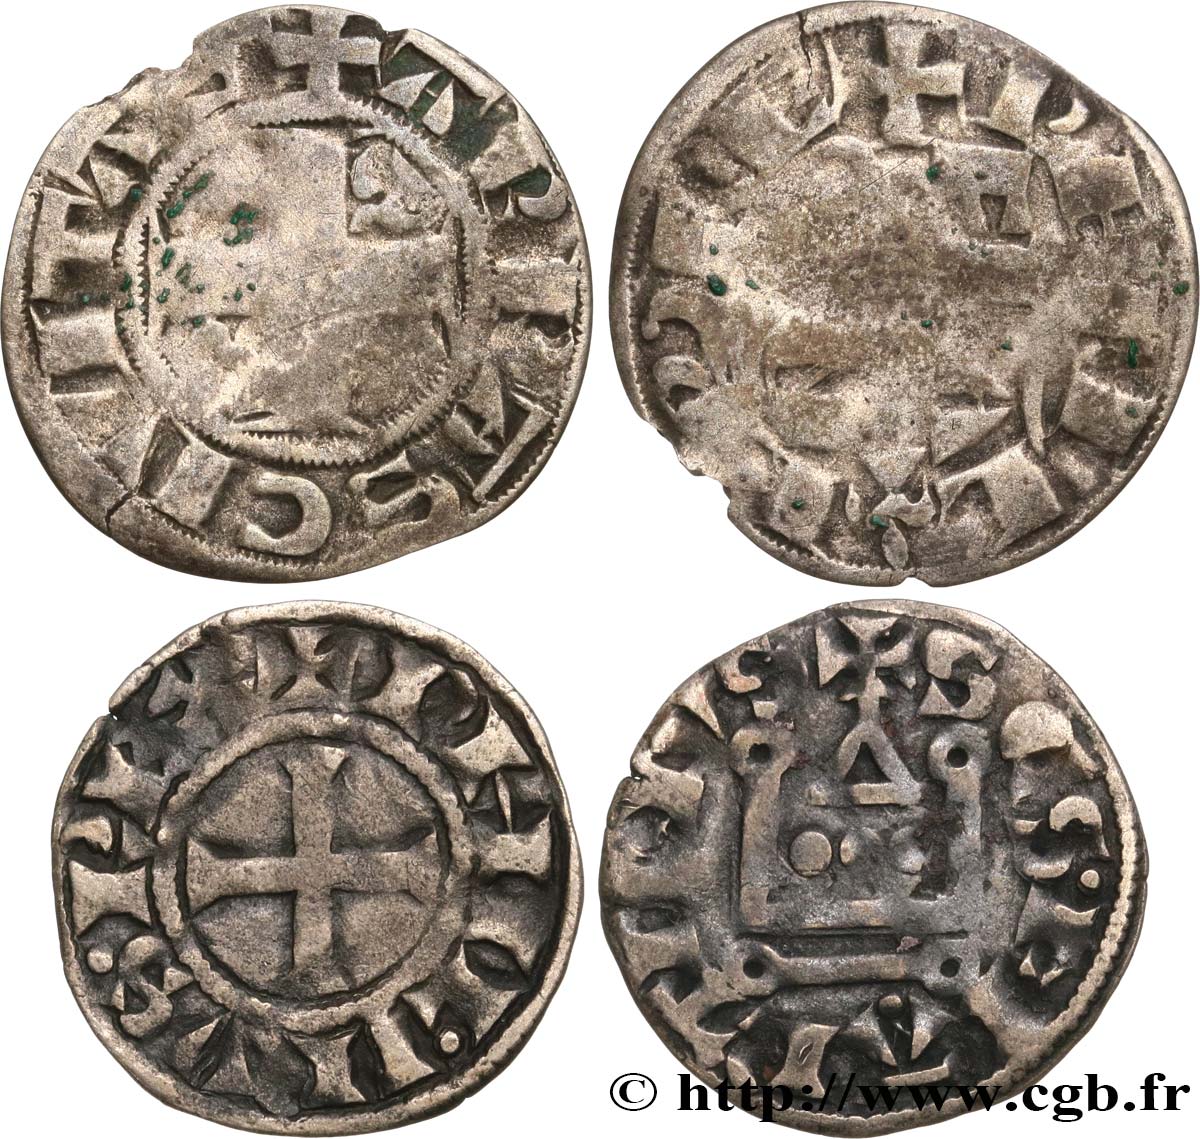 PHILIP II  AUGUSTUS  Lot de deux monnaies royales n.d. Ateliers divers VF